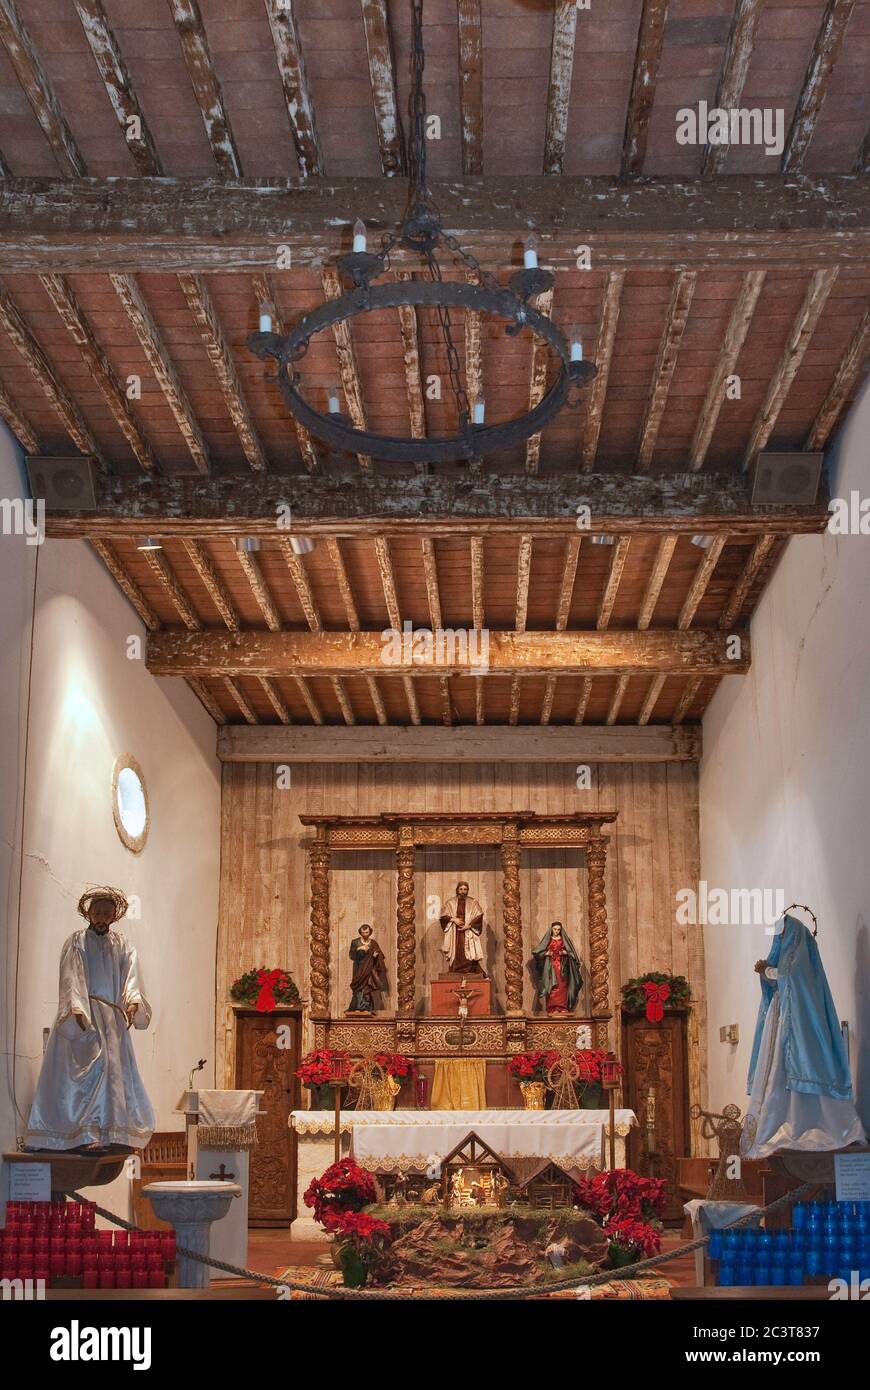 Chiesa interna, prima del furto di tre statue di altare, decorate per Natale, alla Missione San Juan Capistrano a San Antonio, Texas, USA Foto Stock